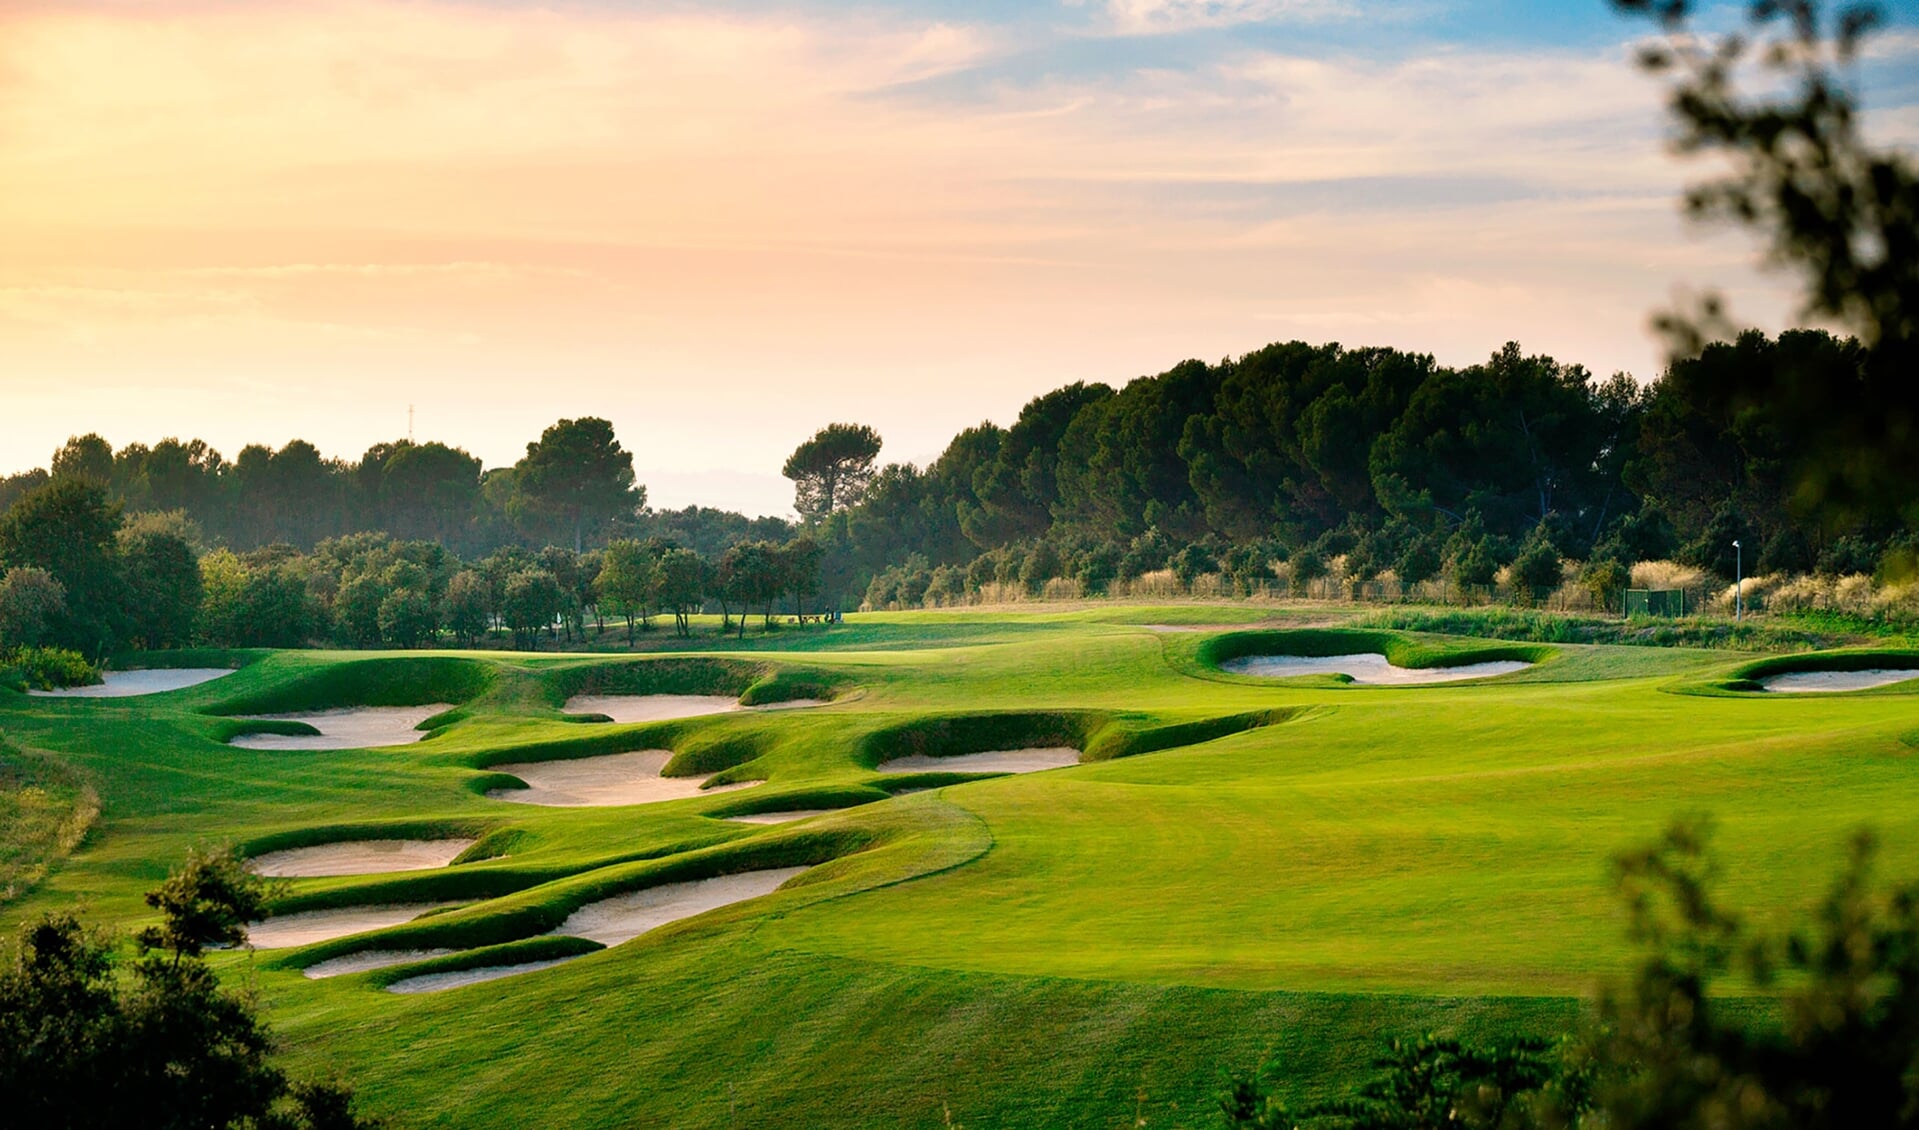 De prachtige Real Club de Golf El Prat nabij Terrassa is een must voor de fijnproevers.